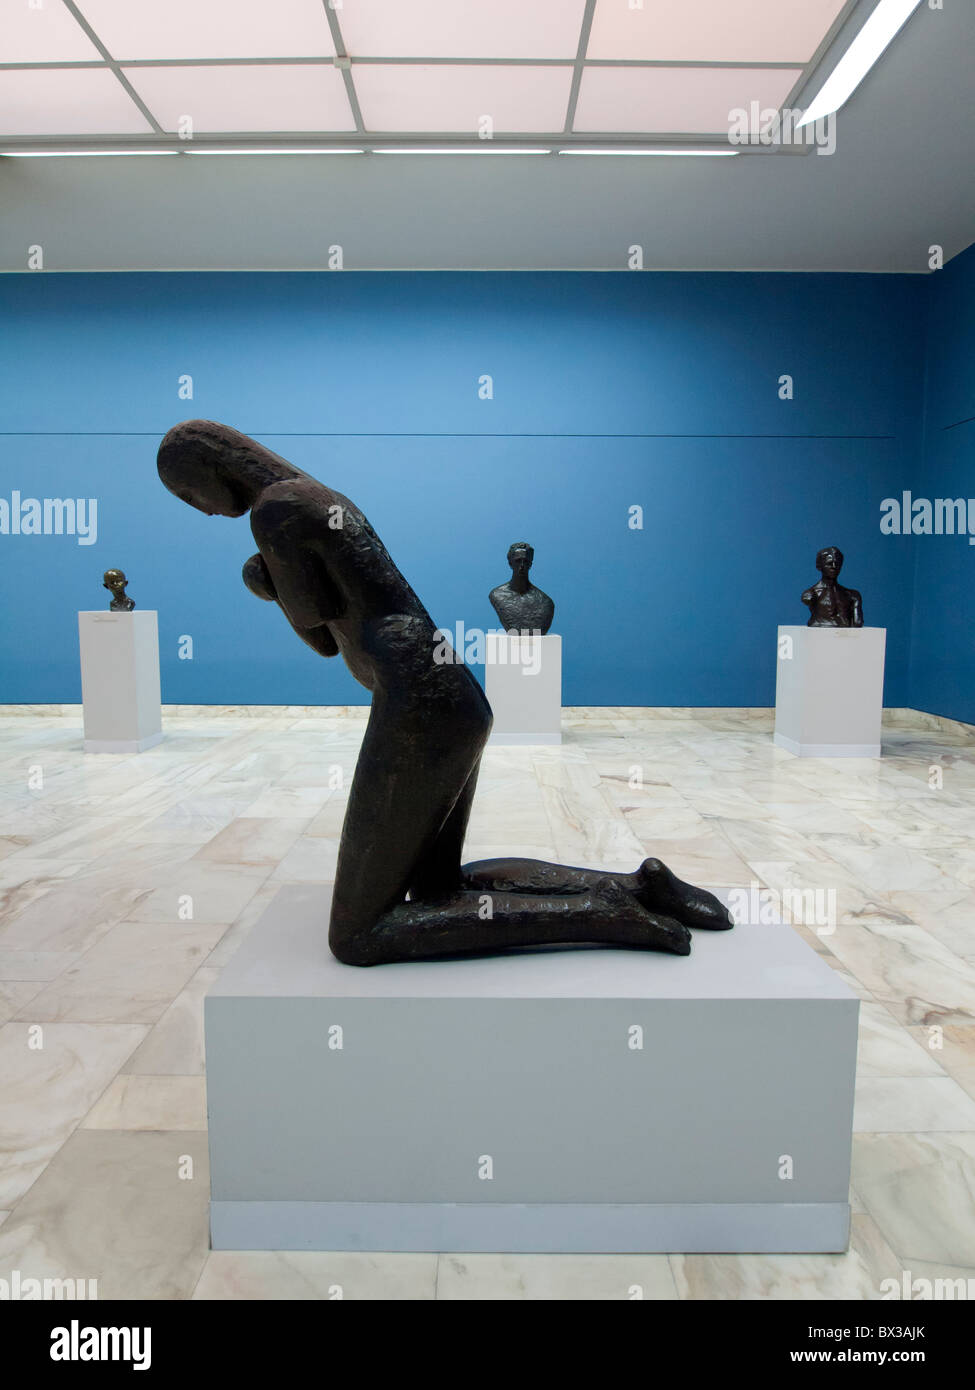 Sculptures de Constantin Brancusi au Musée d'Art de Bucarest Roumanie Banque D'Images